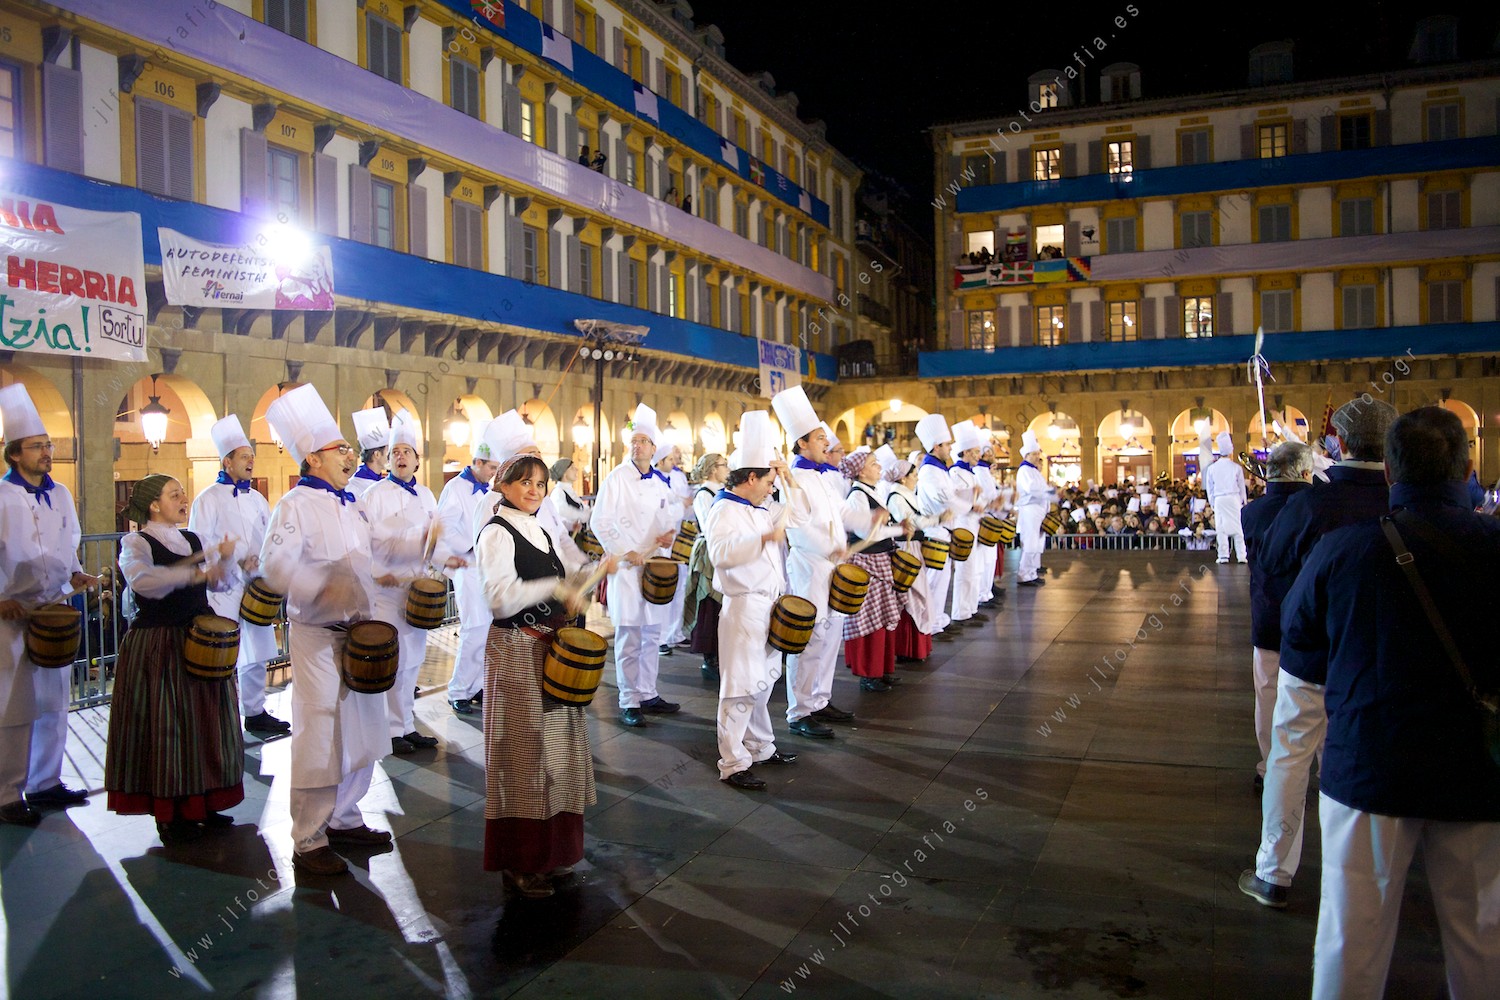 Las sociedades gastronómicas van dando conciertos en la plaza de la constitución tocando la música de Sarriegi.